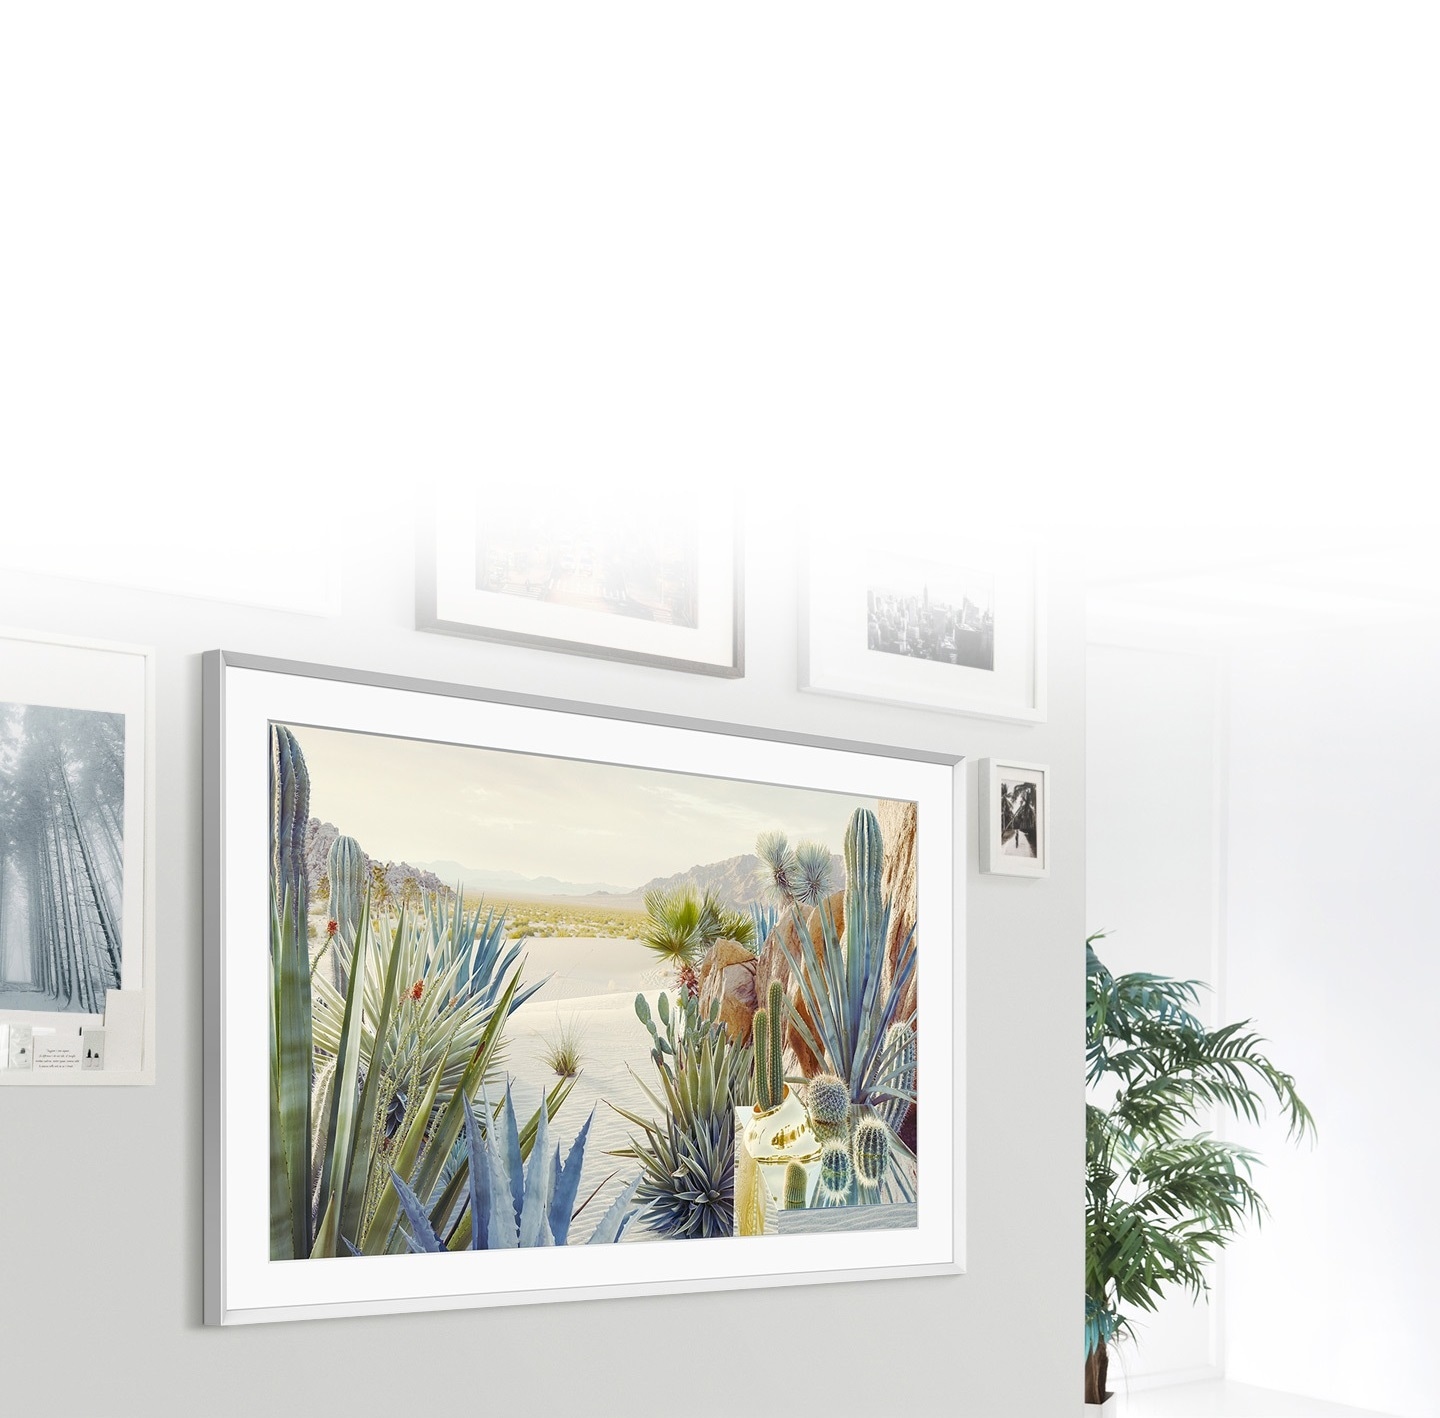 The Frame được treo trên tường cùng với các khung ảnh khác, điều này làm cho The Frame giống như một bức ảnh trên tường.